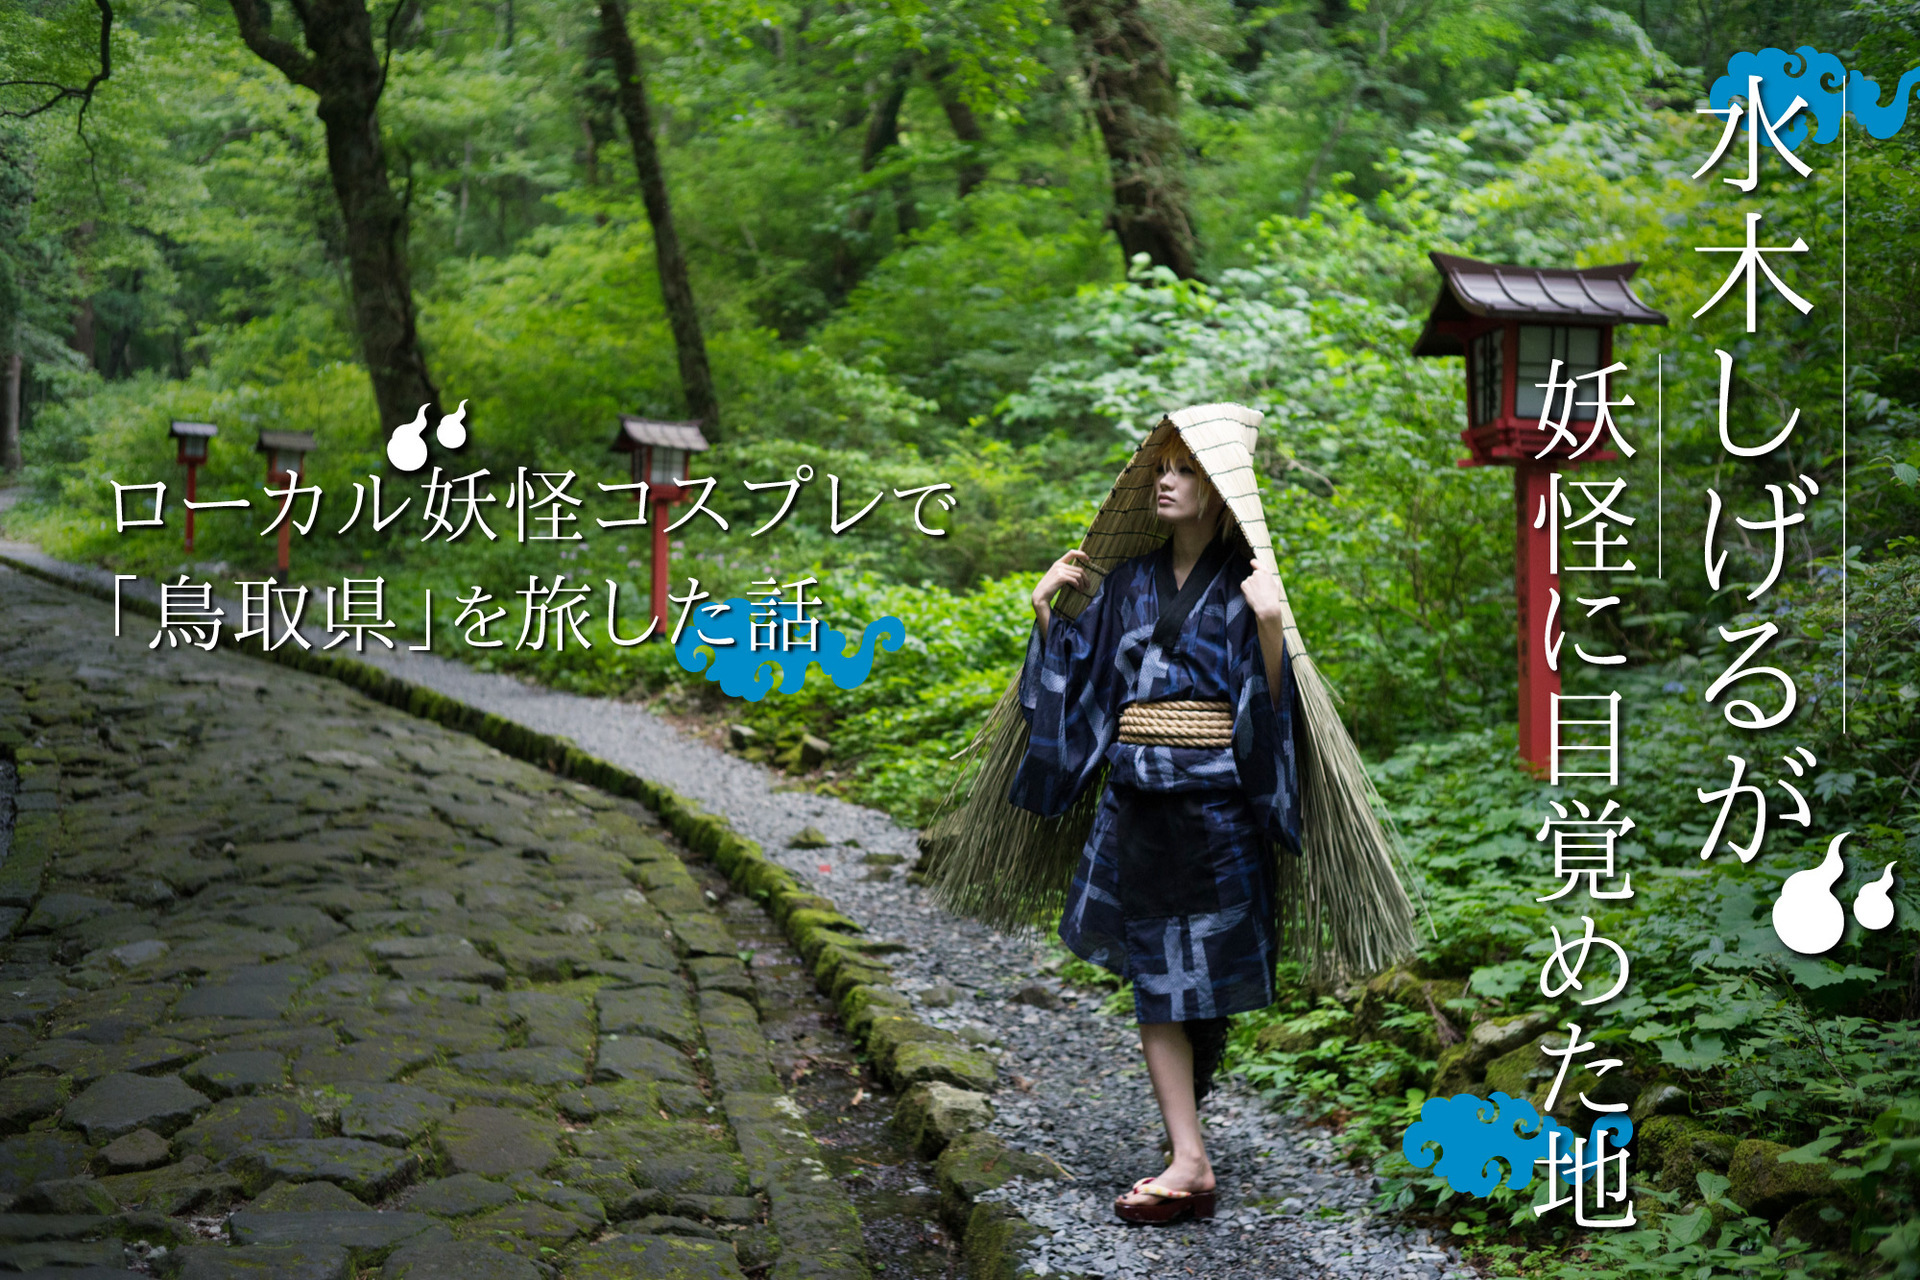 水木しげるが妖怪に目覚めた地「鳥取県」をローカル妖怪コスプレで旅した話